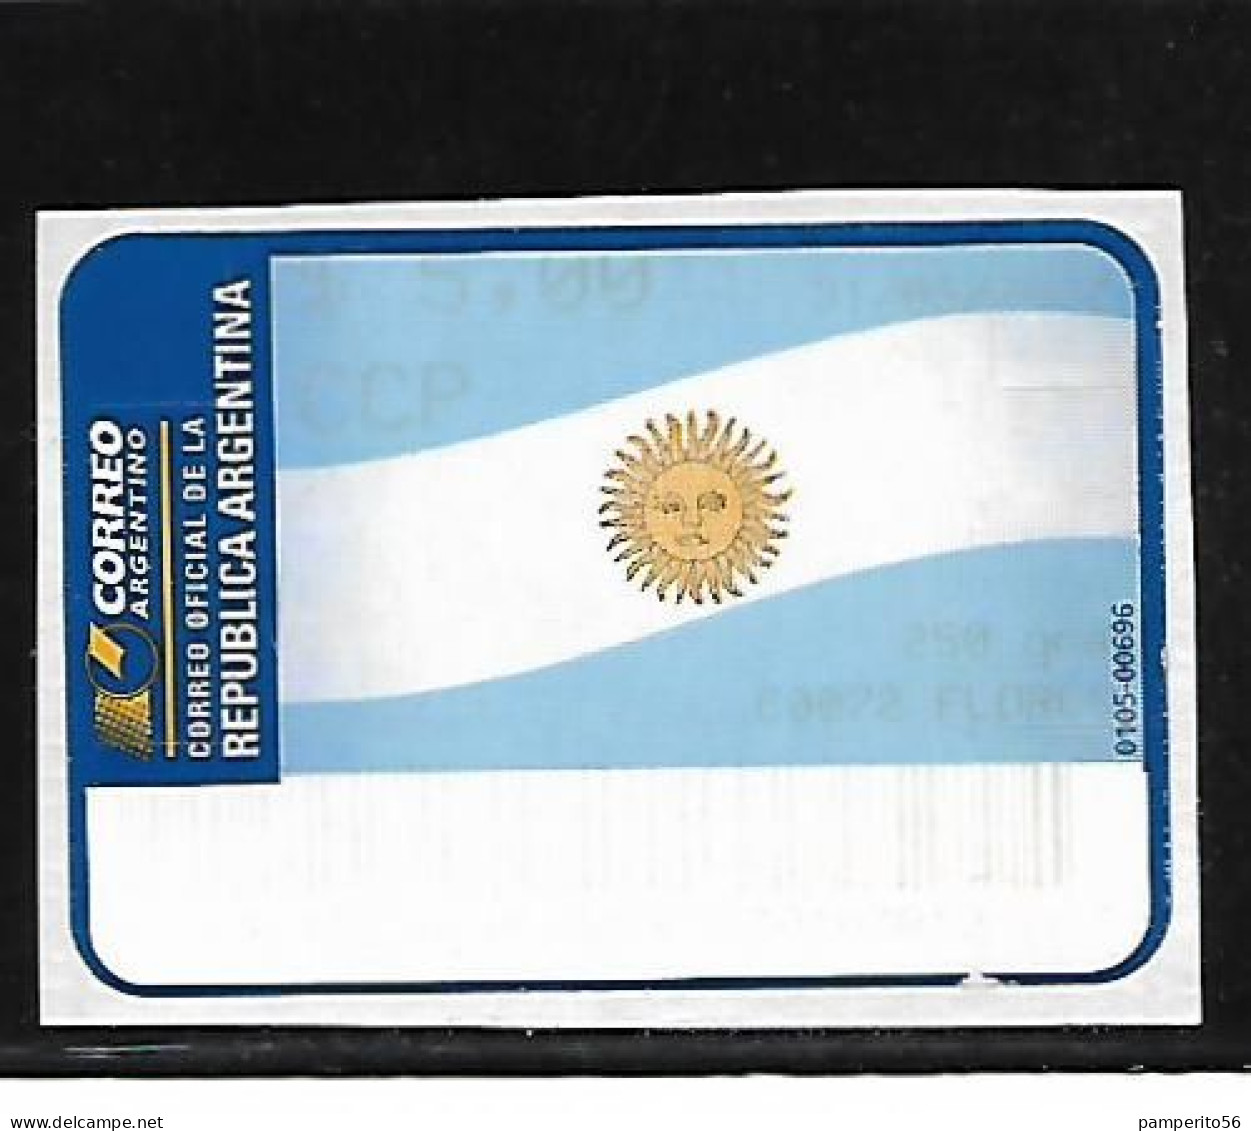 ARGENTINA - AÑO 2002 - Etiqueta De Franqueo CCP 20 Grs - Flores - Franking Labels